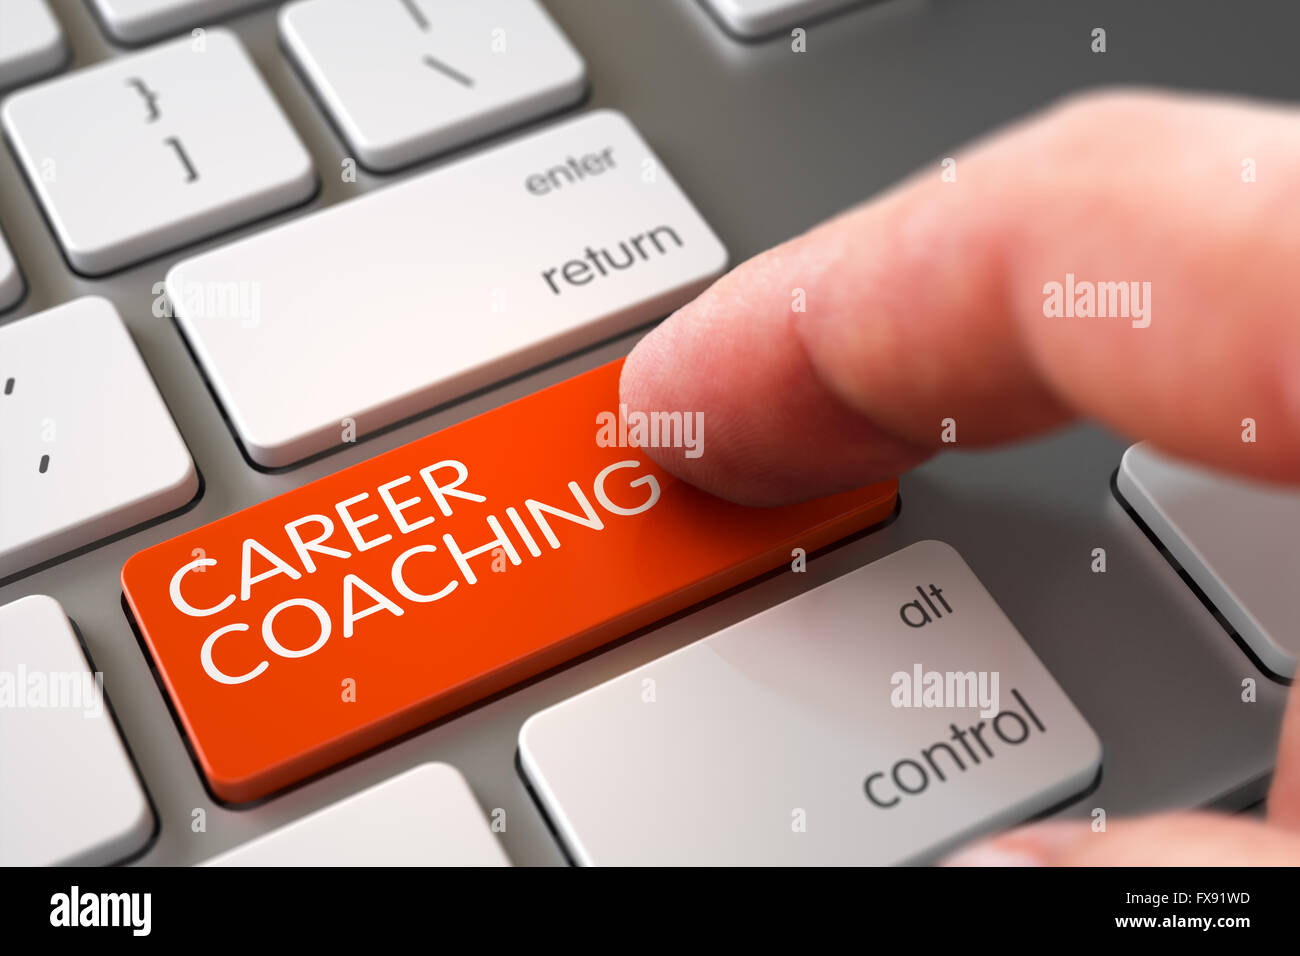 Karriere-Coaching auf Tastatur Schlüsselbegriff. Stockfoto